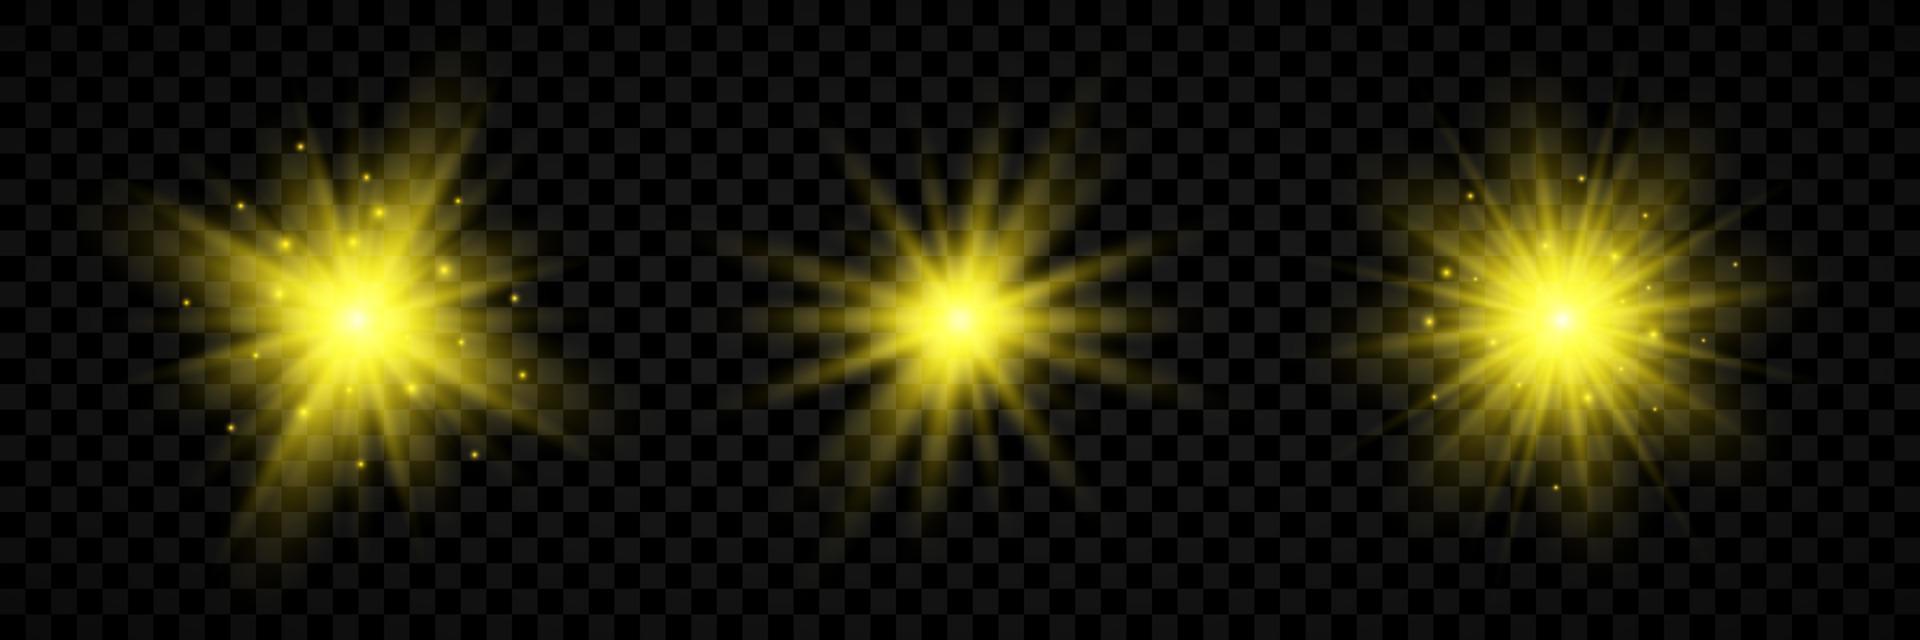 leggero effetto di lente razzi. impostato di tre giallo raggiante luci starburst effetti con scintille vettore